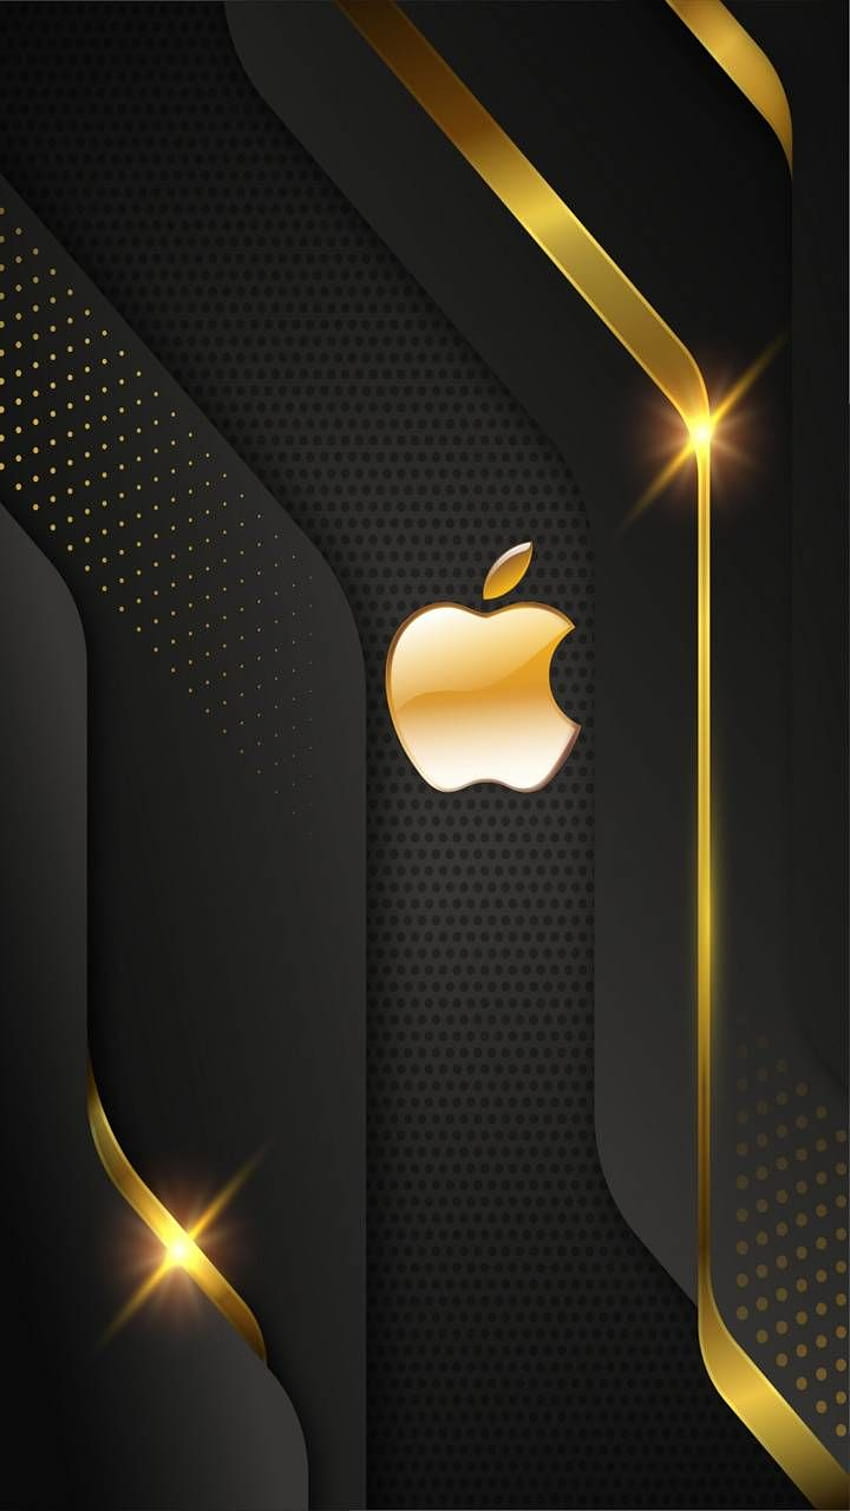 Sắc vàng rực rỡ của Apple VIP Gold sẽ làm bạn ngỡ ngàng khi được chứng kiến. Với khả năng kết hợp giữa tính năng và sự đẳng cấp của Apple, bạn sẽ không muốn bỏ lỡ điều này. Thật là một trong những khoảnh khắc thuộc về VIP Gold.